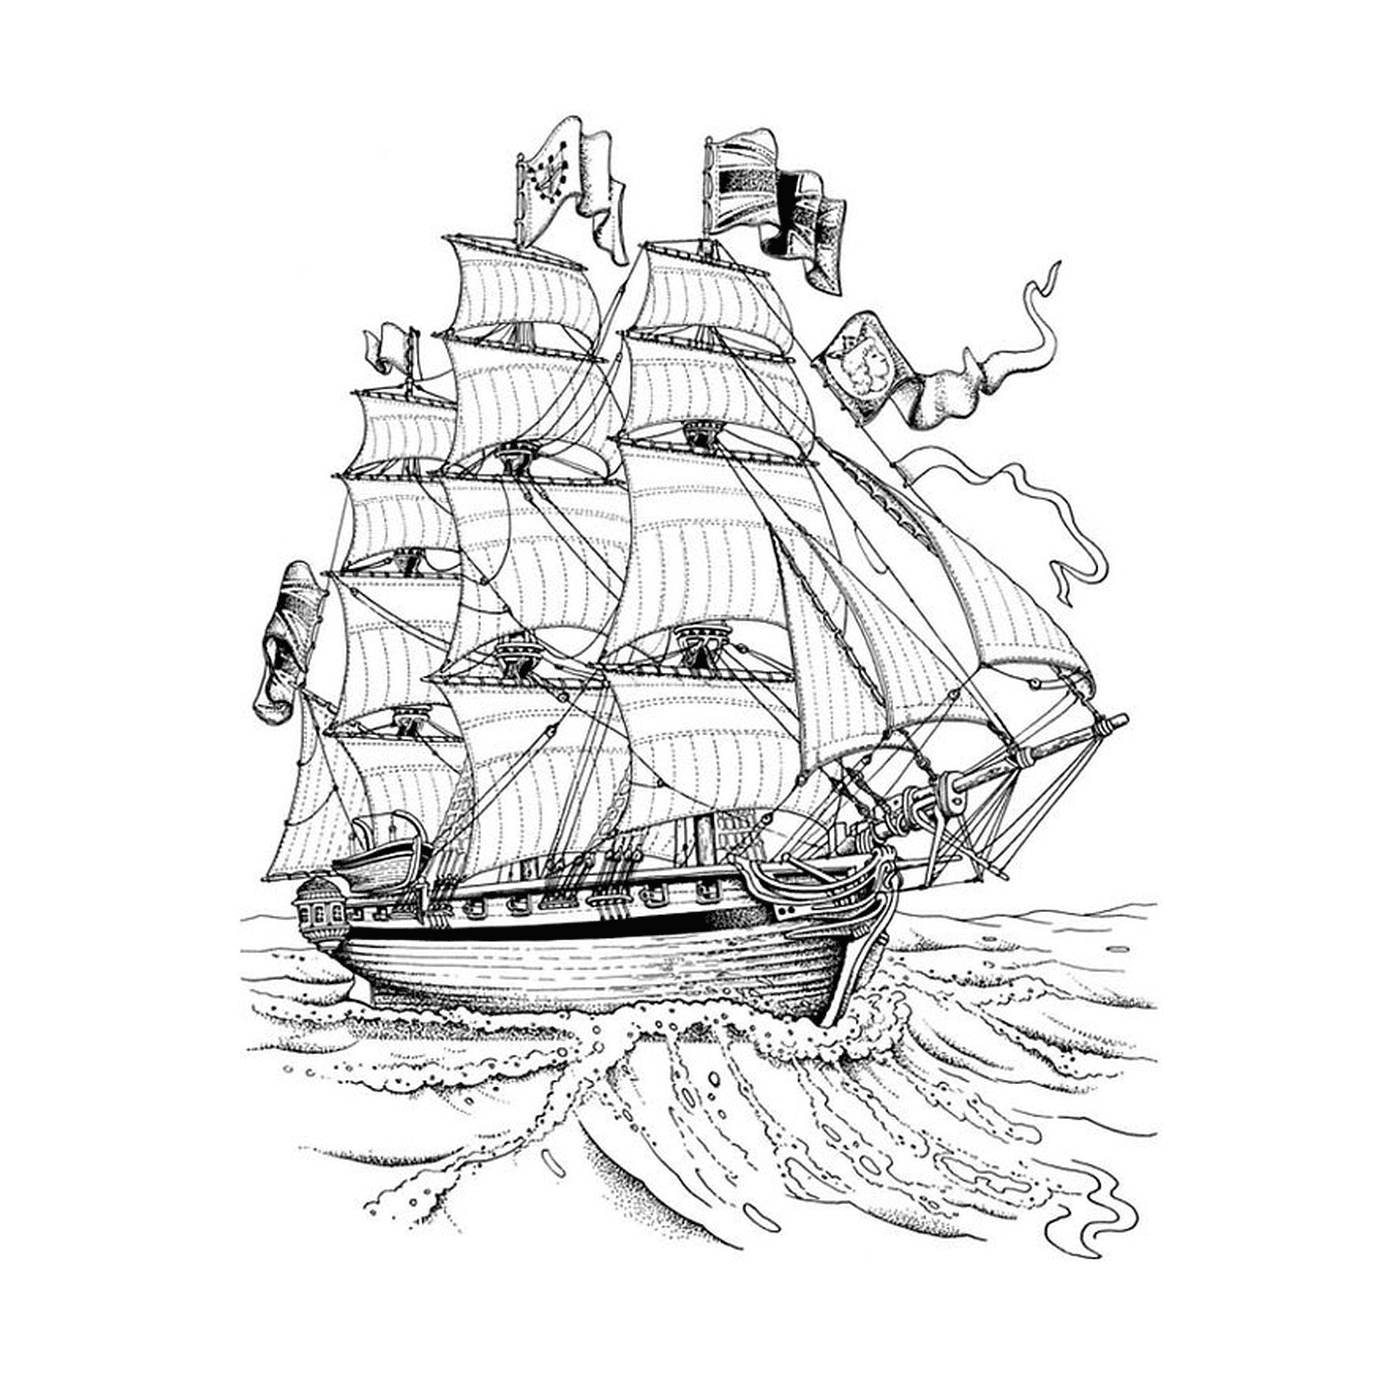  Captain Crochet's boat 